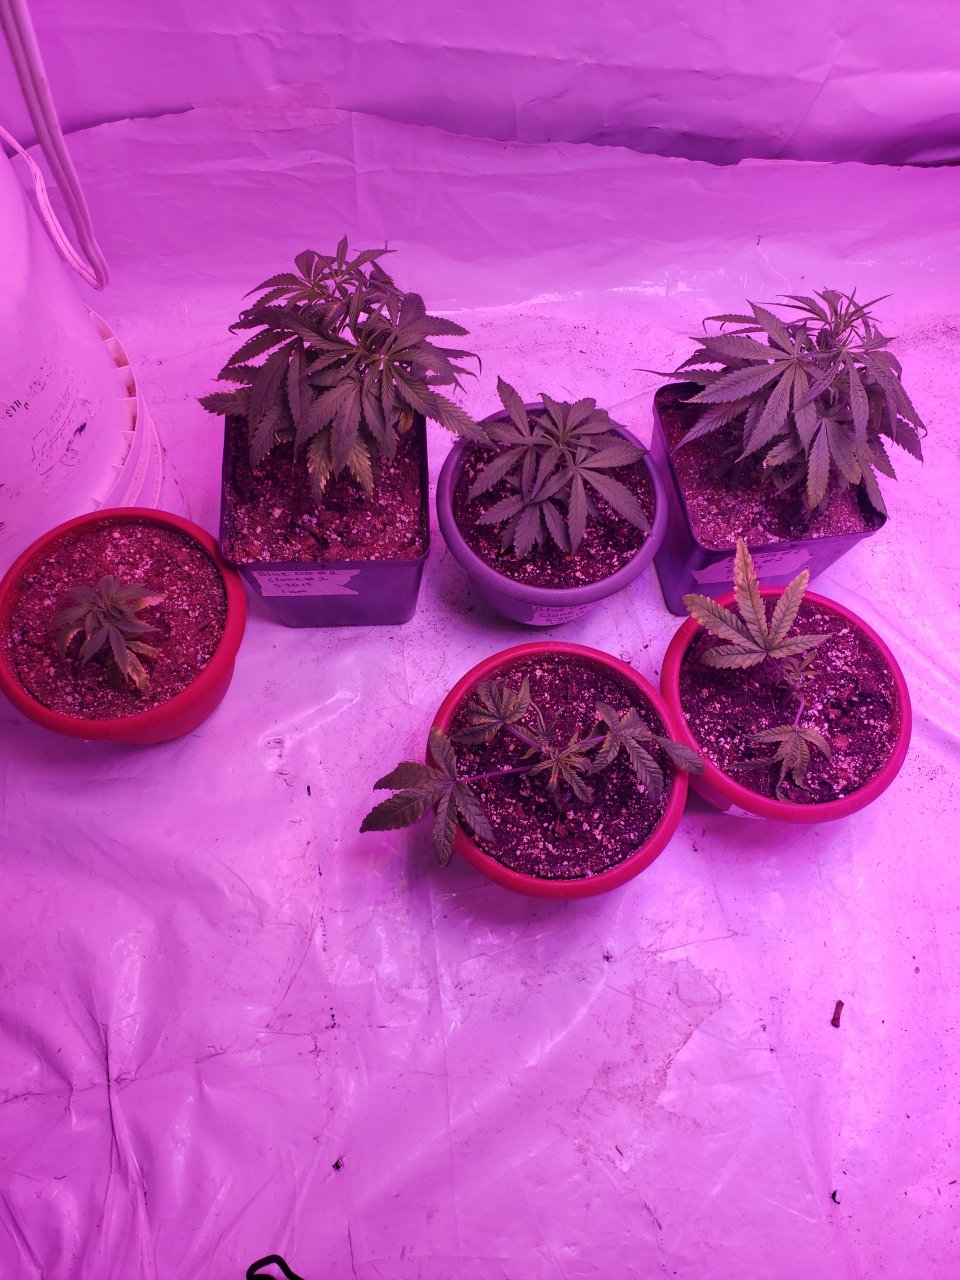 New clones Blue og x4 in back an 2 poss. Grapefruit OG in front